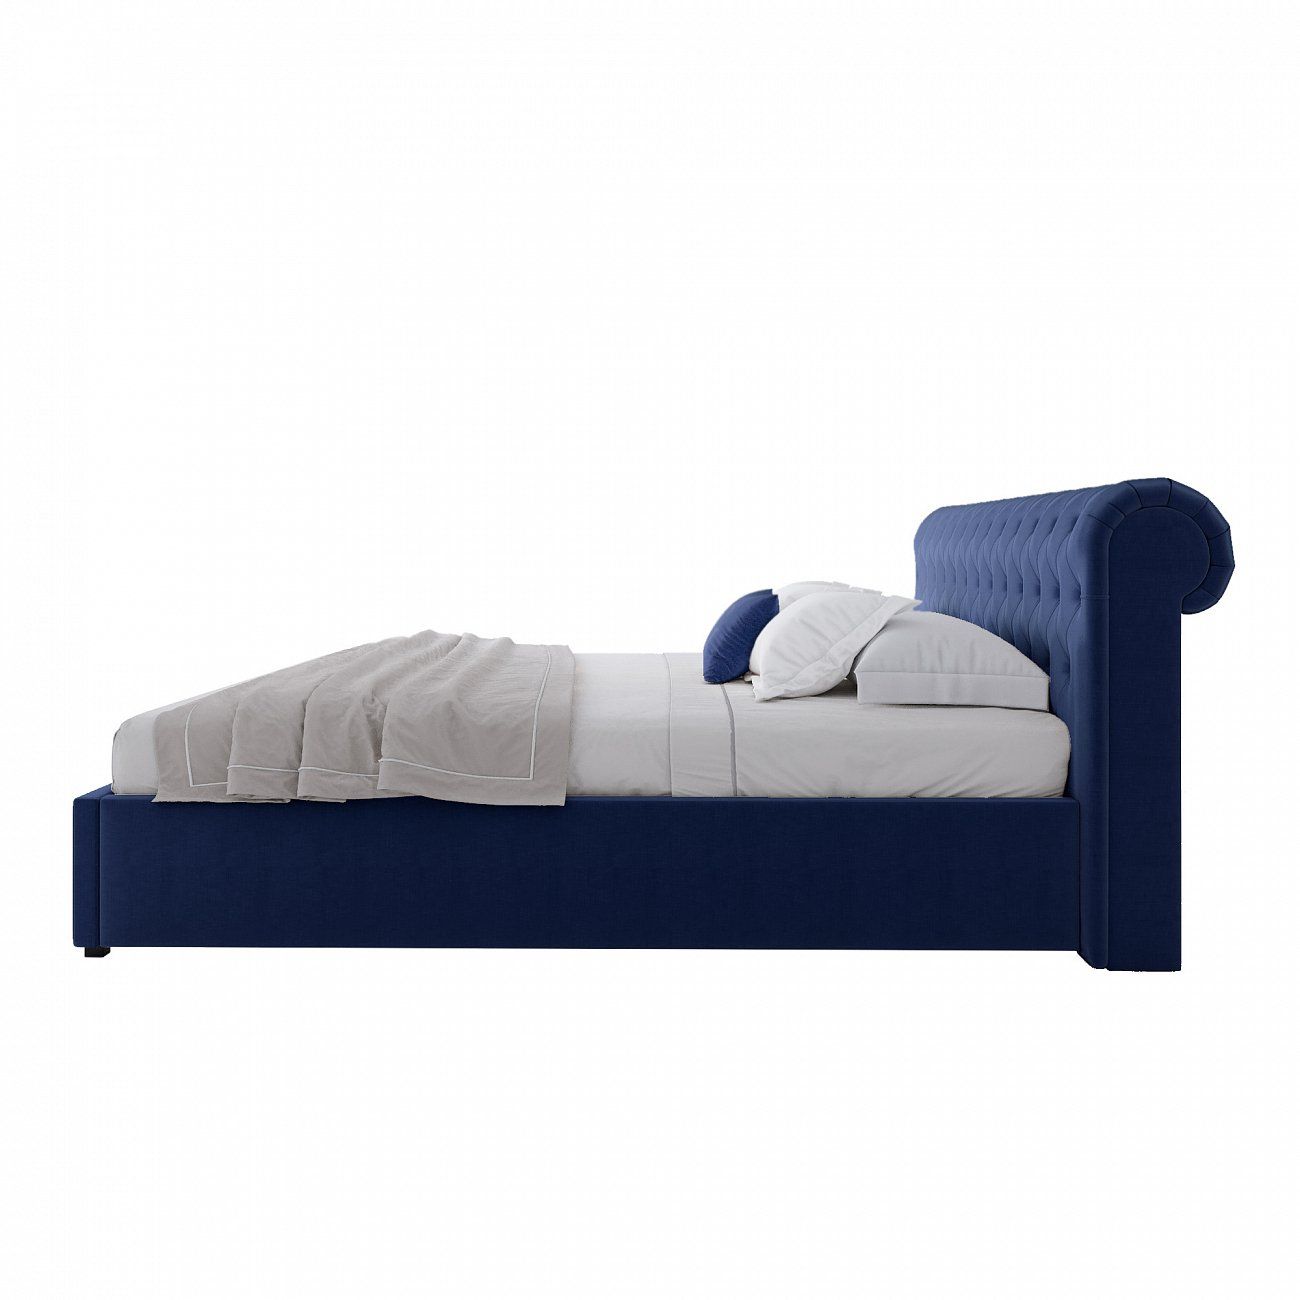 Big bed 200x200 Sweet Dreams blue